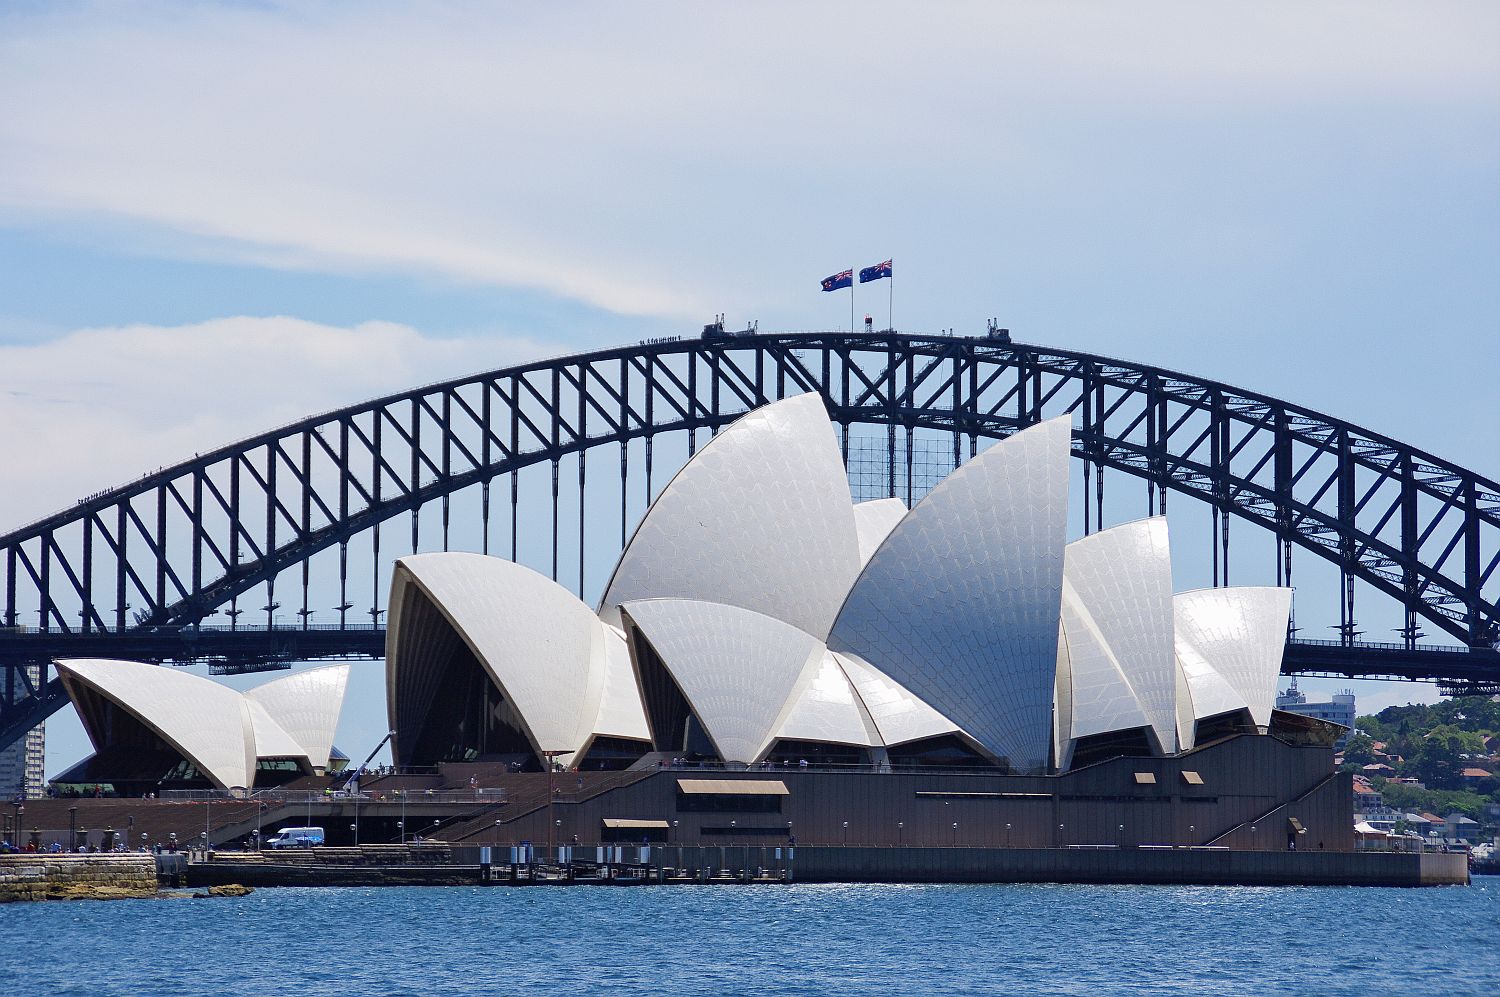 世界遺産 シドニー オペラハウス オーストラリア シドニー 行き方 見学のしかた 近代文化遺産見学案内所